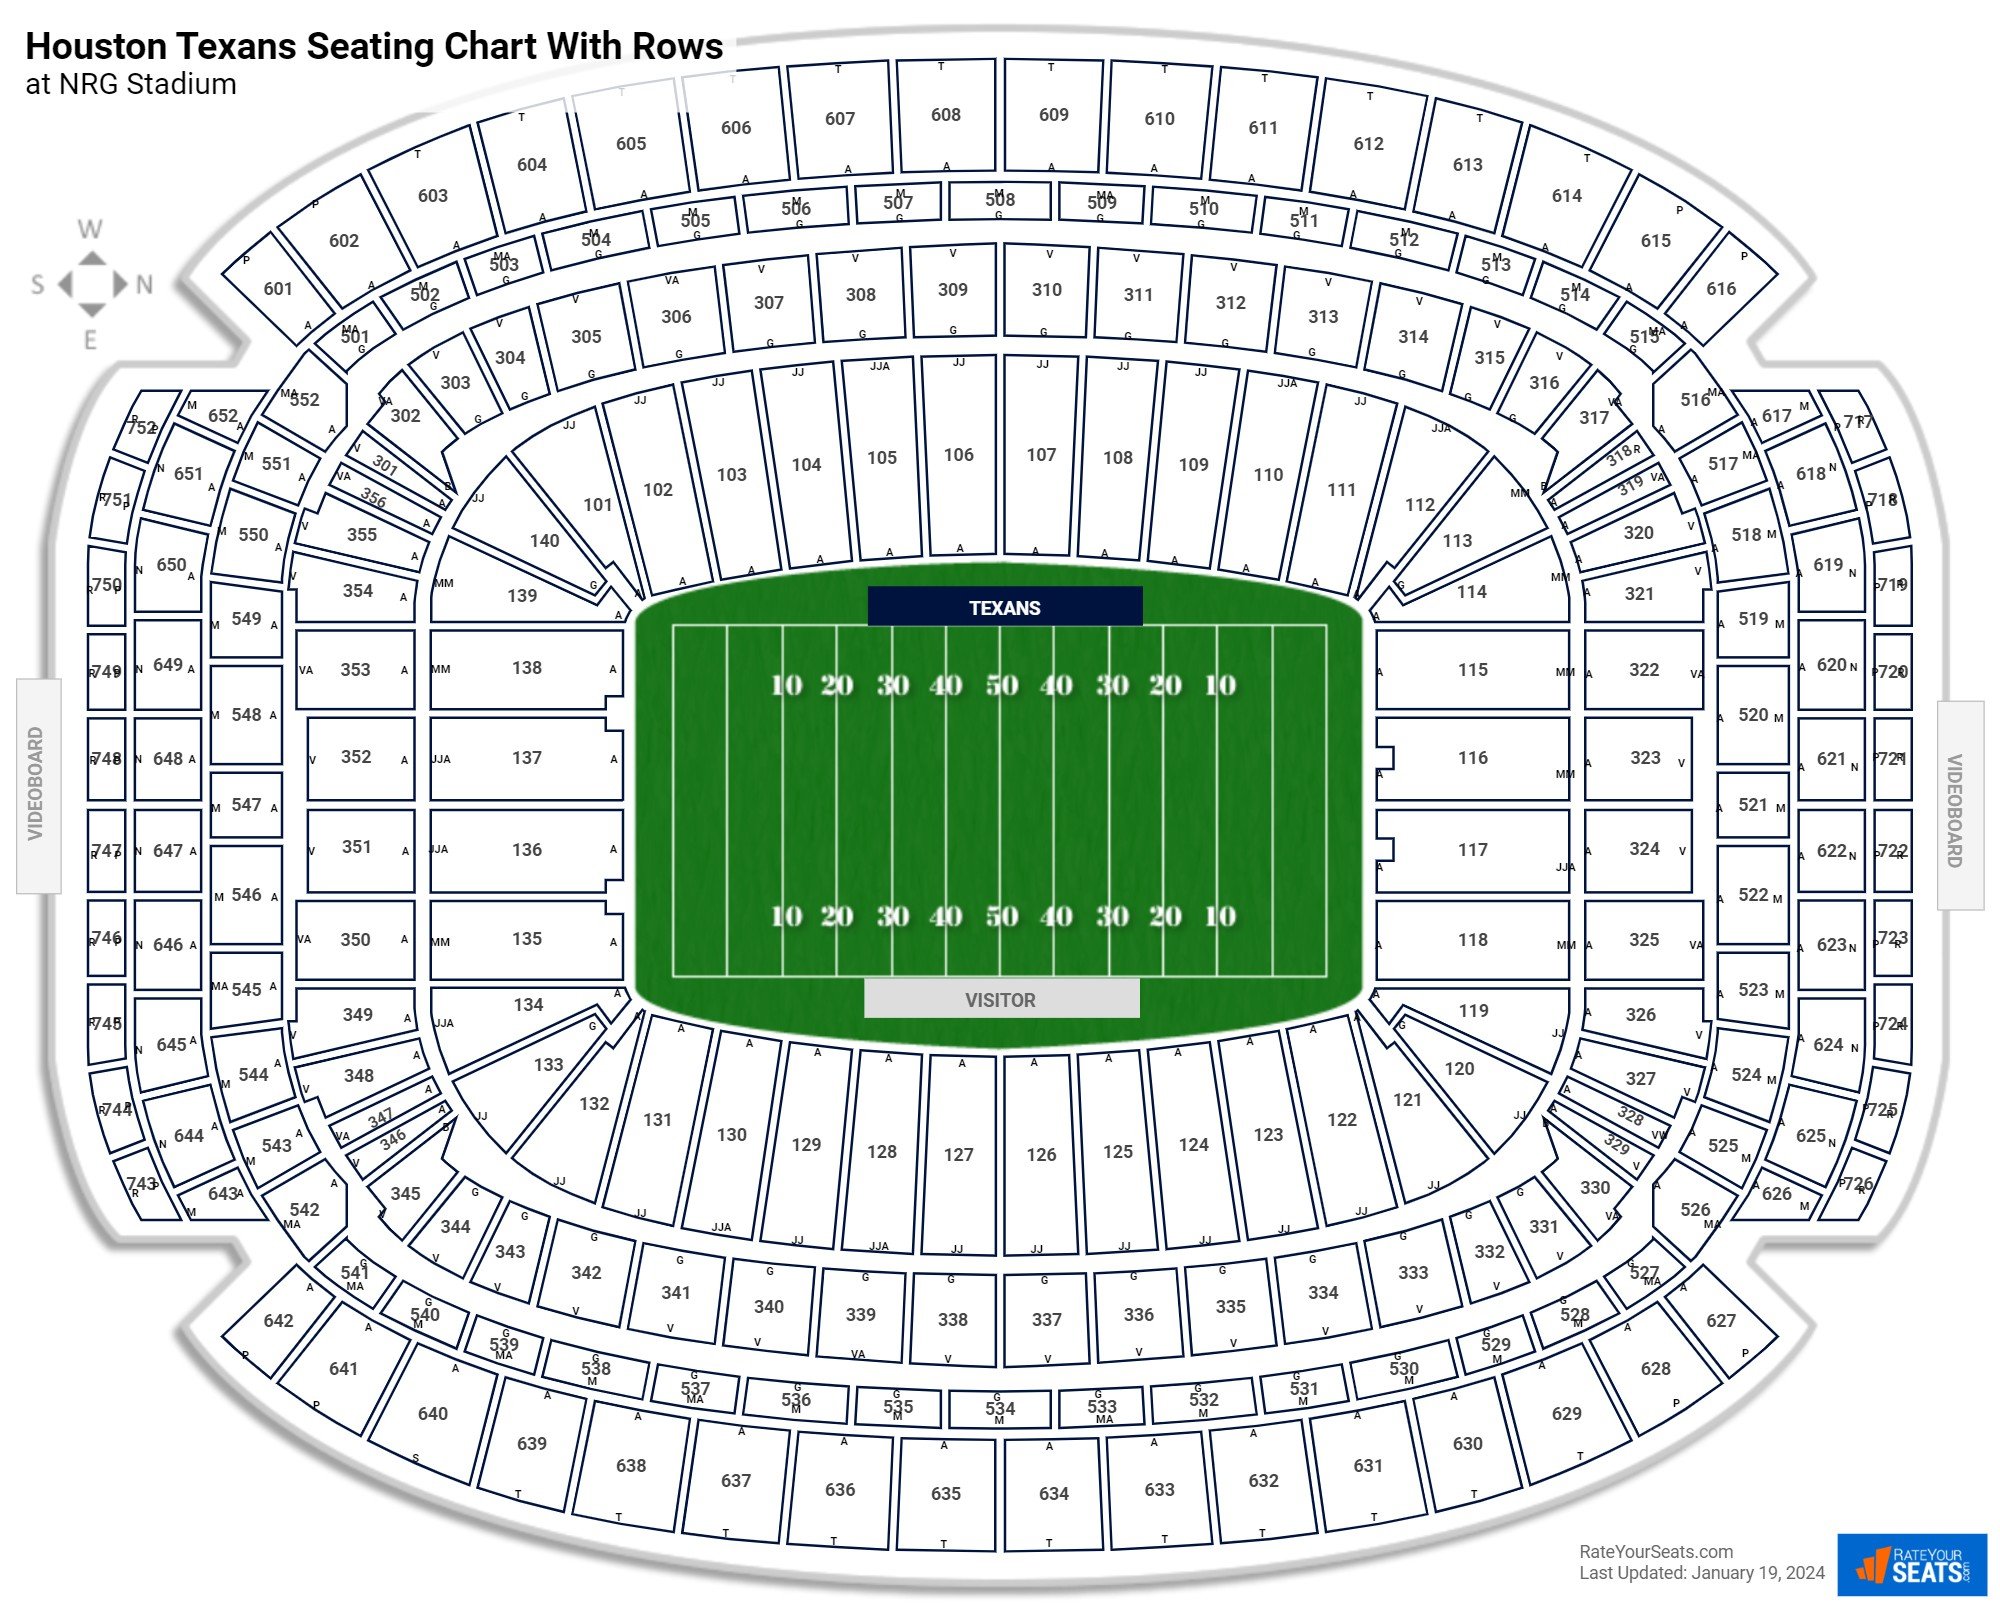 Houston Texans Seating Charts at NRG Stadium